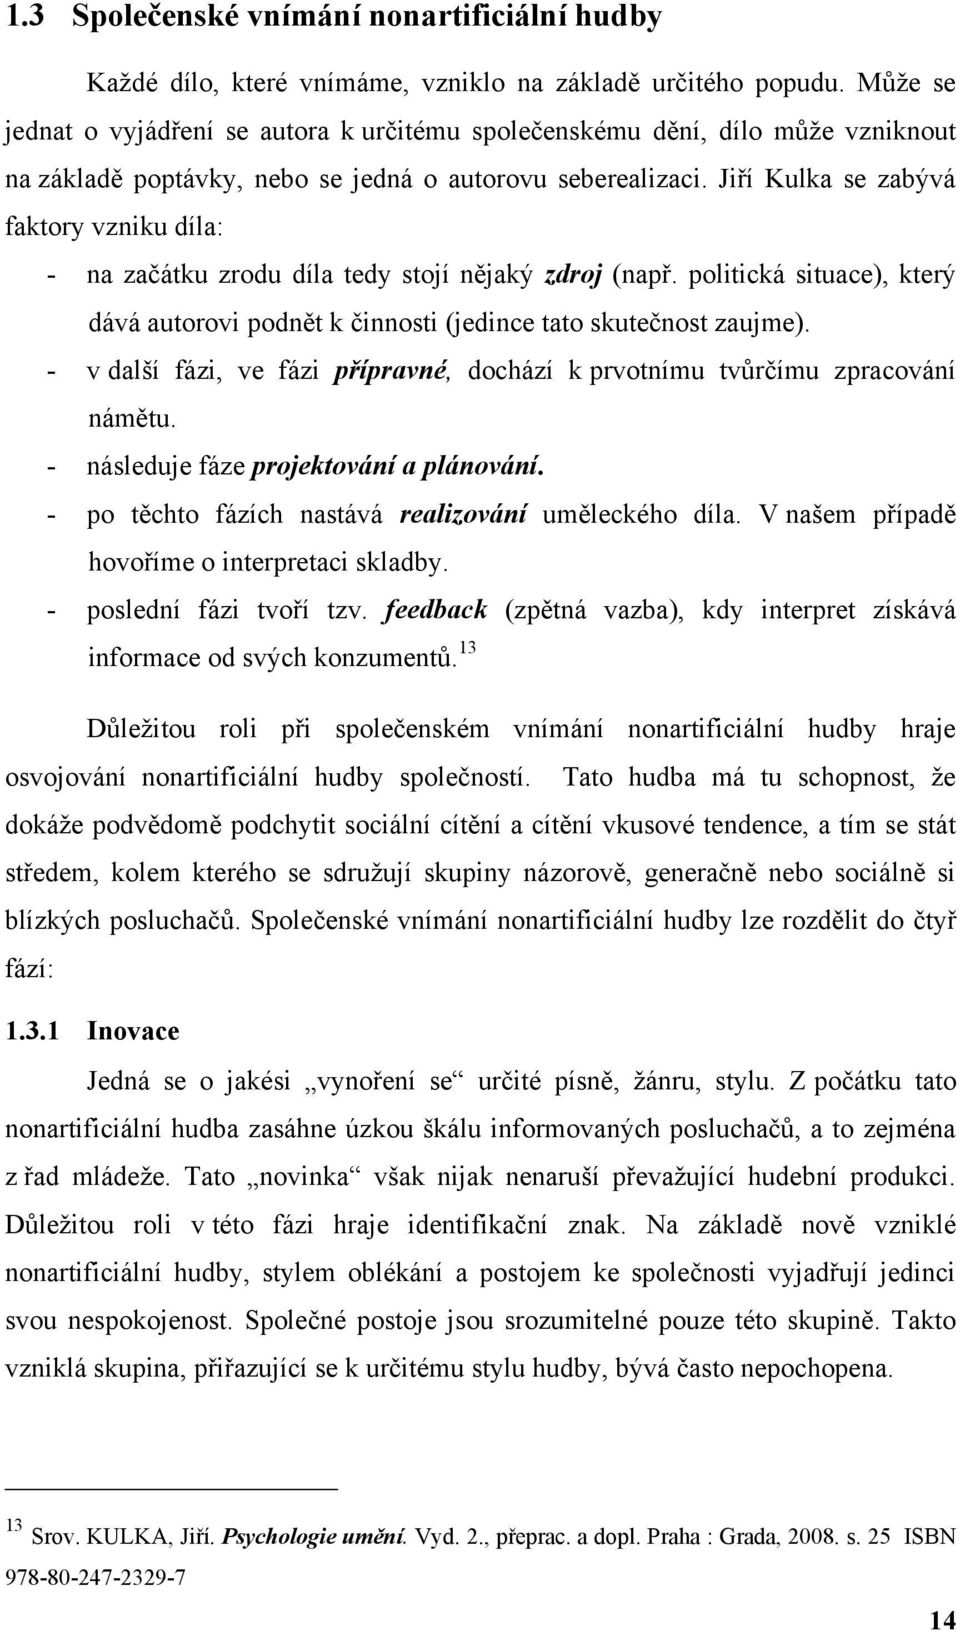 Jiří Kulka se zabývá faktory vzniku díla: - na začátku zrodu díla tedy stojí nějaký zdroj (např. politická situace), který dává autorovi podnět k činnosti (jedince tato skutečnost zaujme).